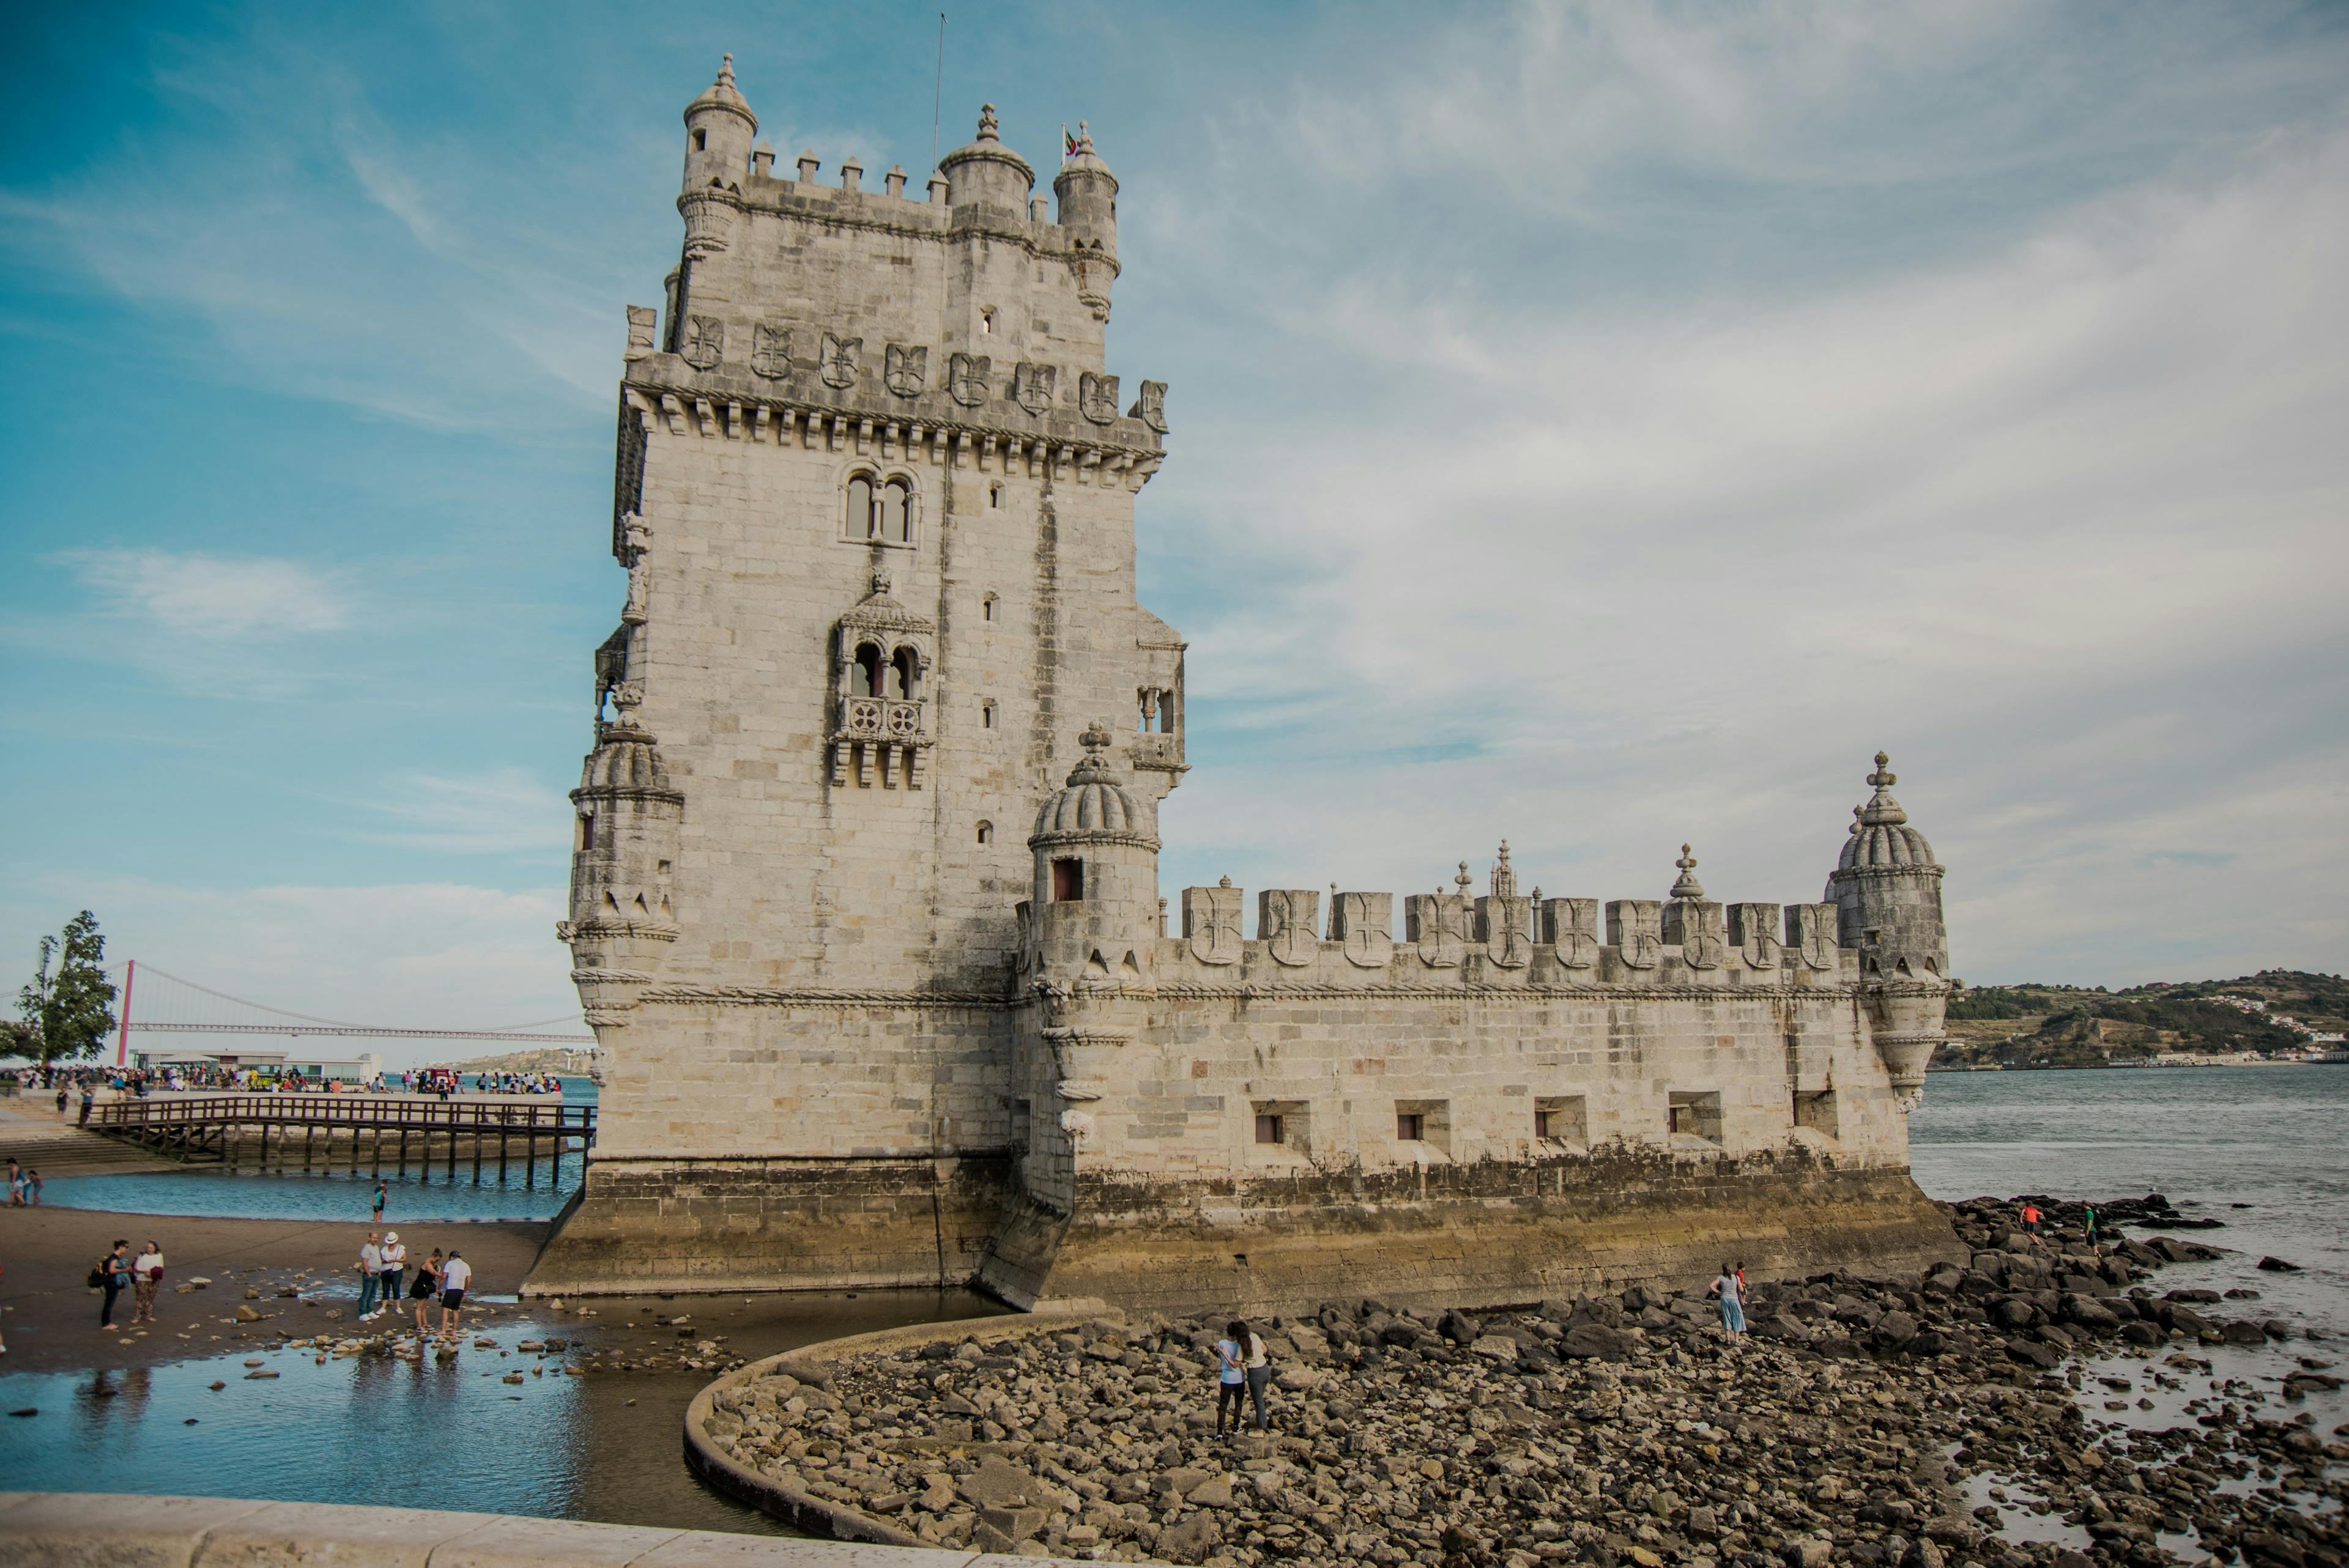 Belem tower in Lisbon Portugal